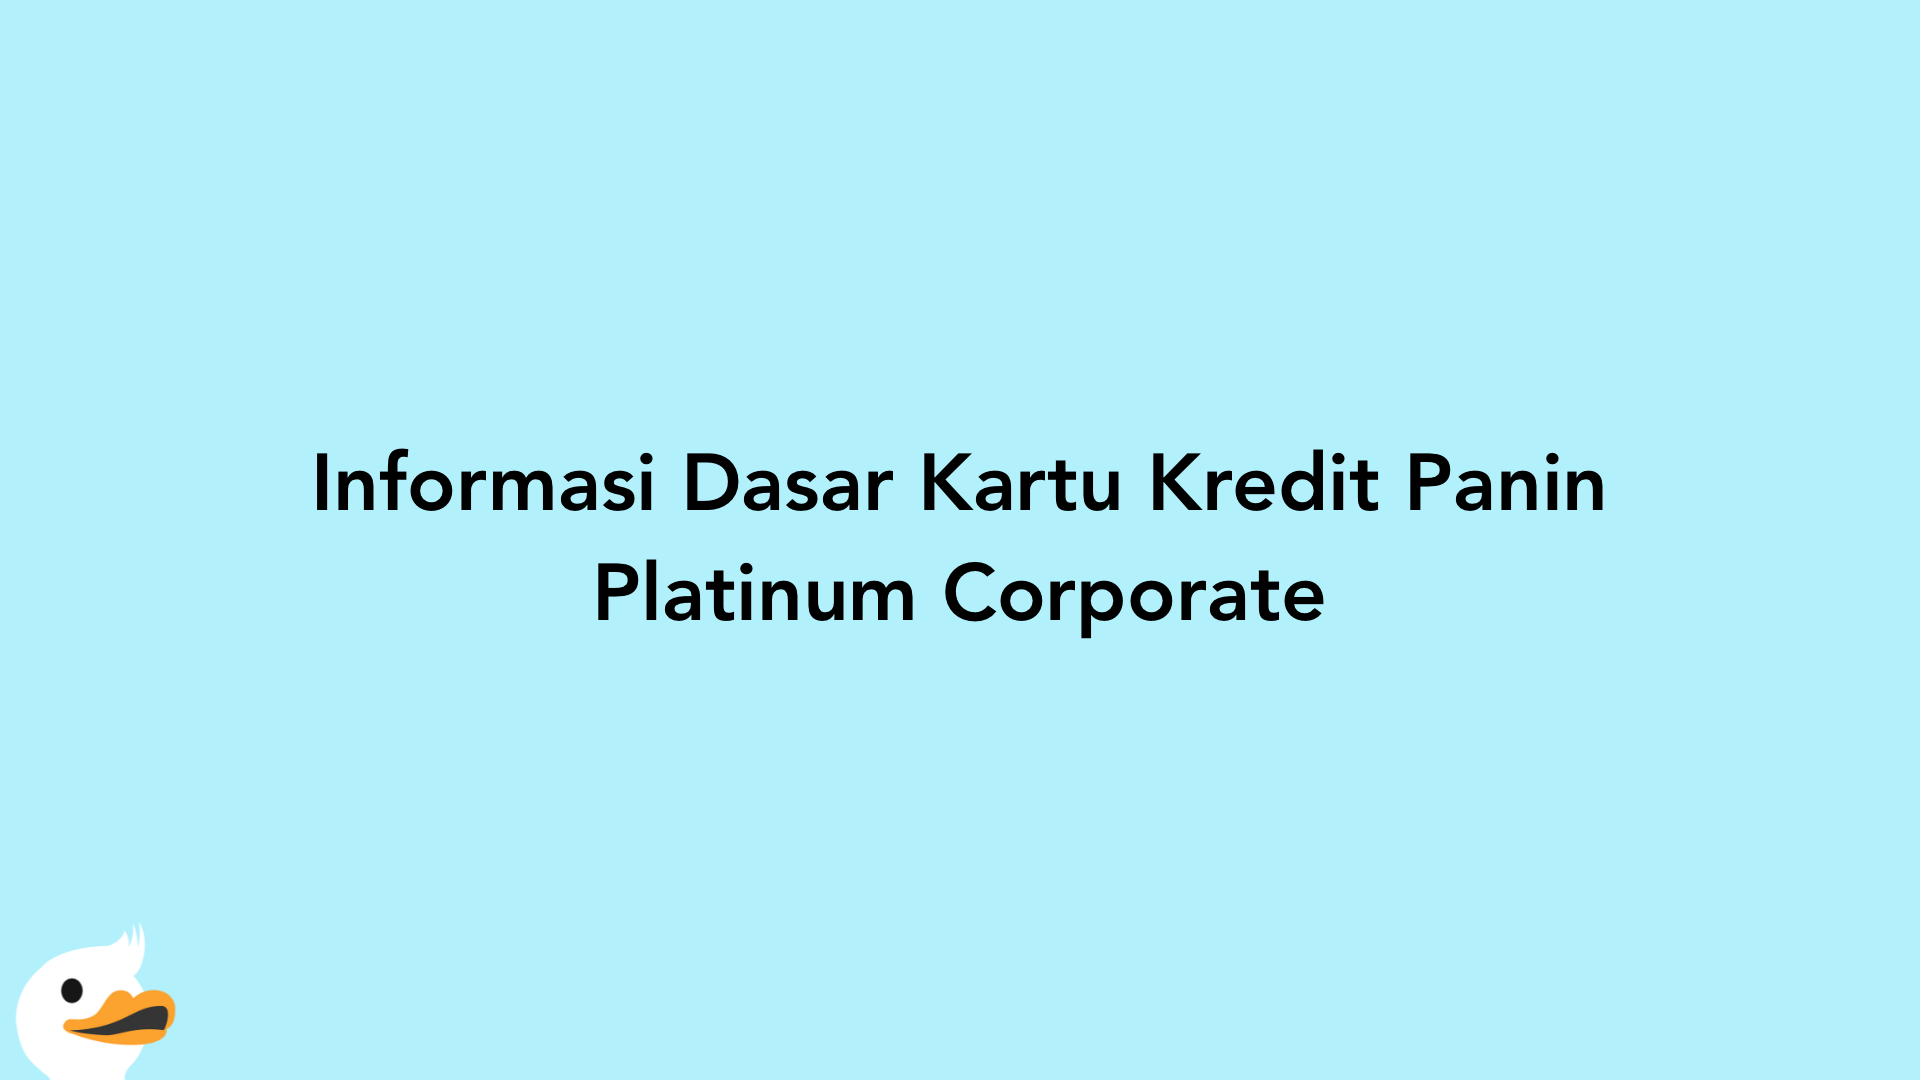 Informasi Dasar Kartu Kredit Panin Platinum Corporate